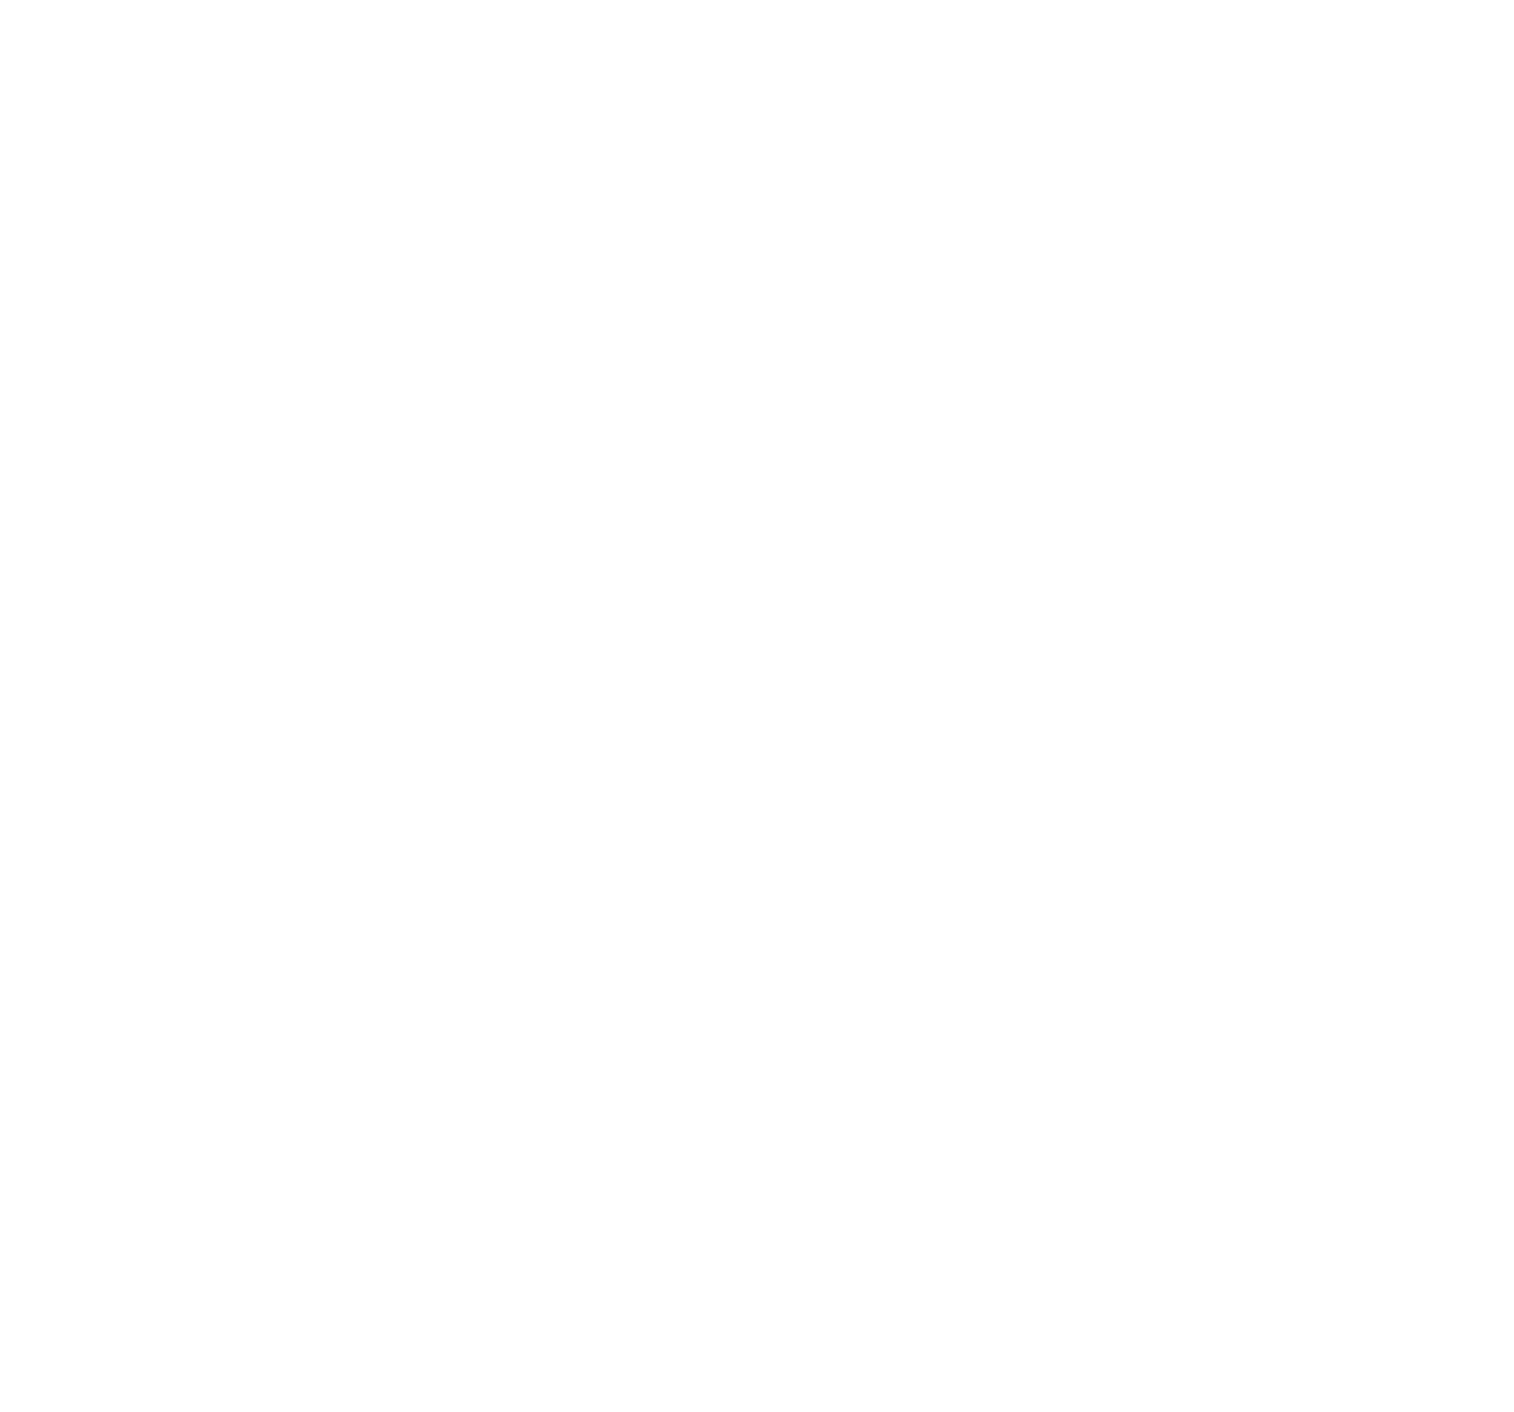 WashTec AG logo for dark backgrounds (transparent PNG)